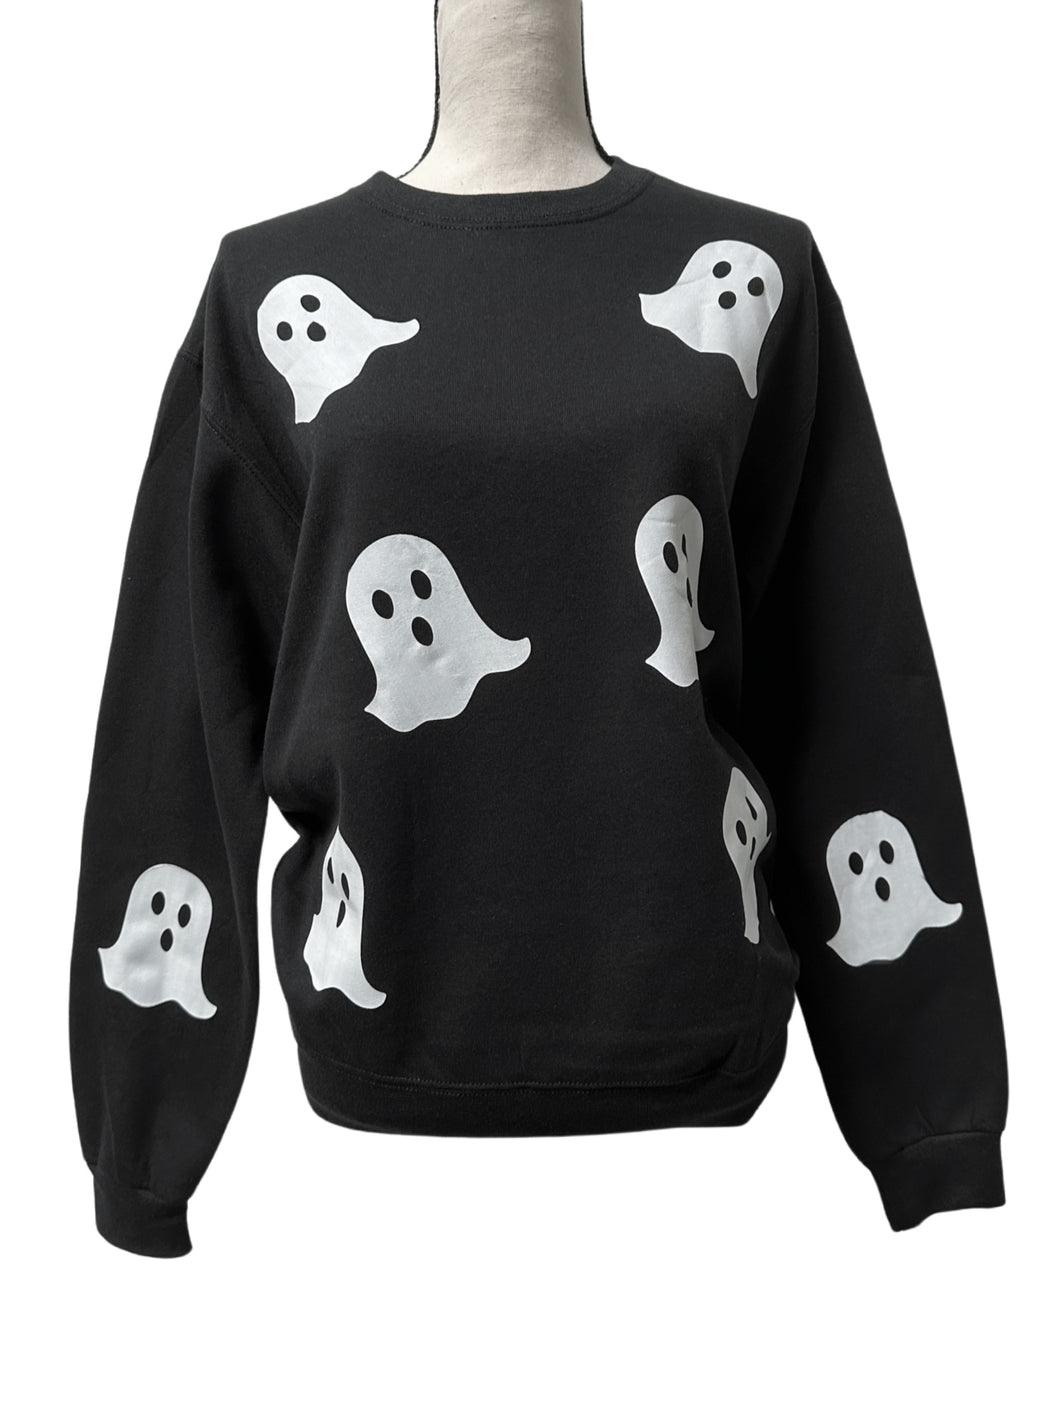 Ghostie Sweatshirt (Adults)